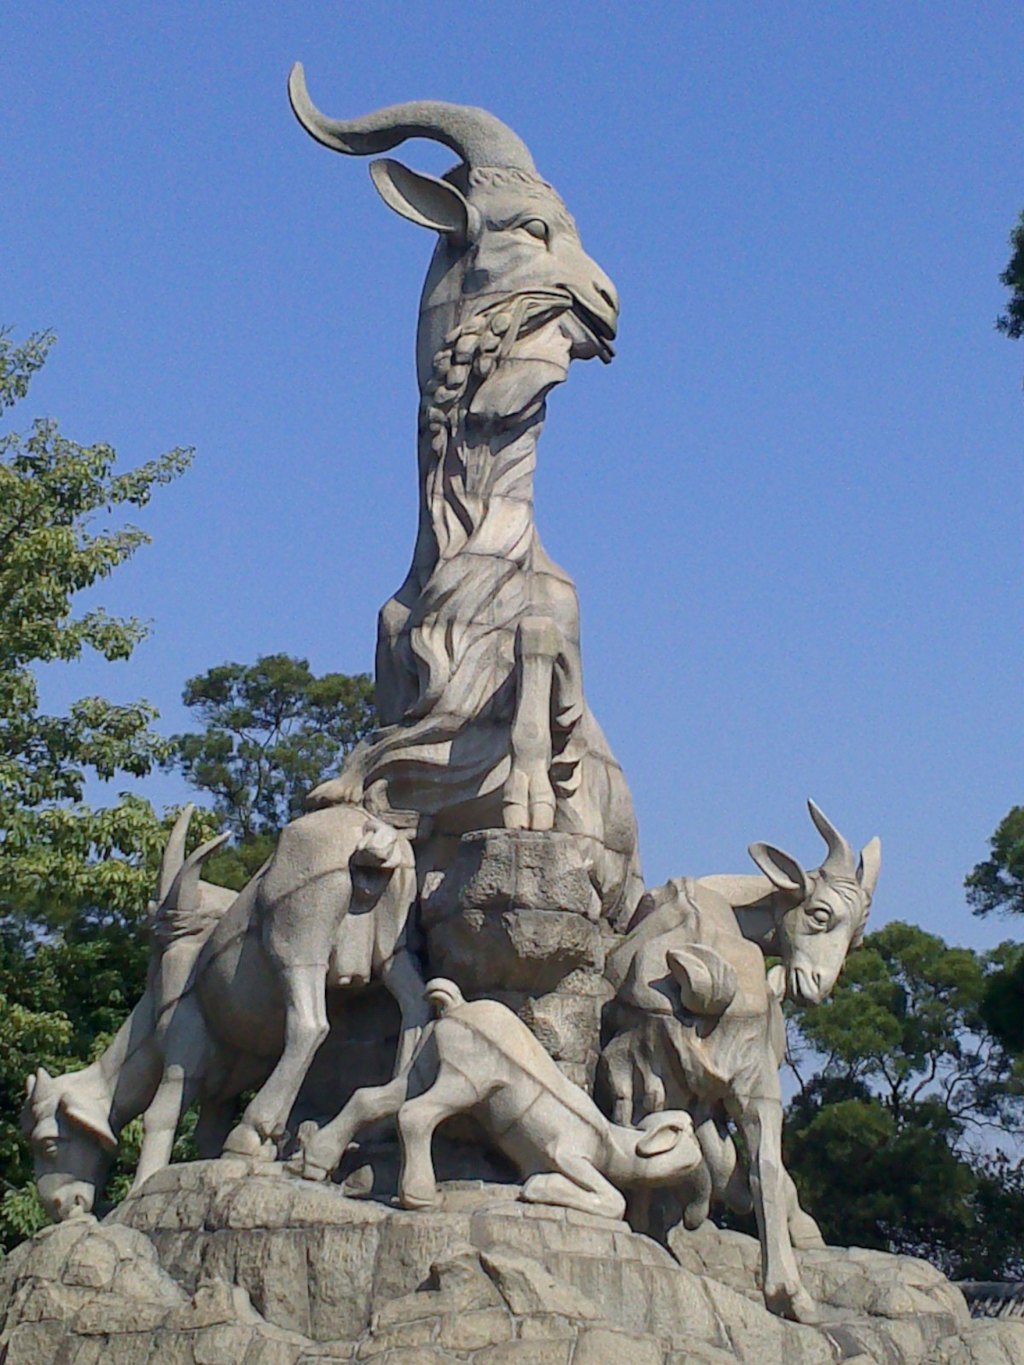 广州的标志 五羊雕像 所以广州叫羊城 还特意买了份羊城晚报回来